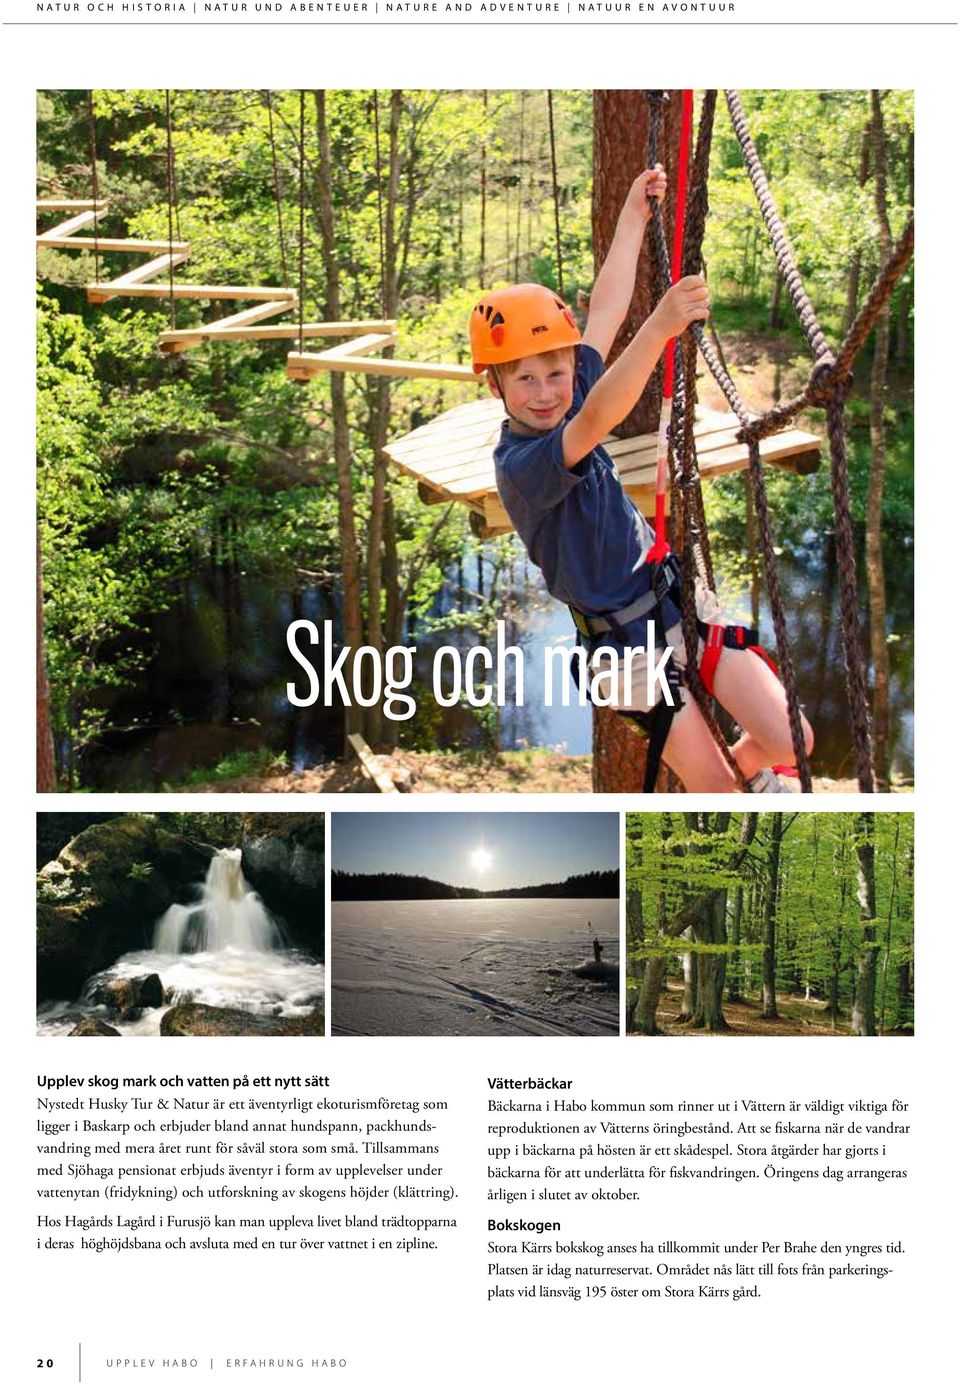 Tillsammans med Sjöhaga pensionat erbjuds äventyr i form av upplevelser under vattenytan (fridykning) och utforskning av skogens höjder (klättring).